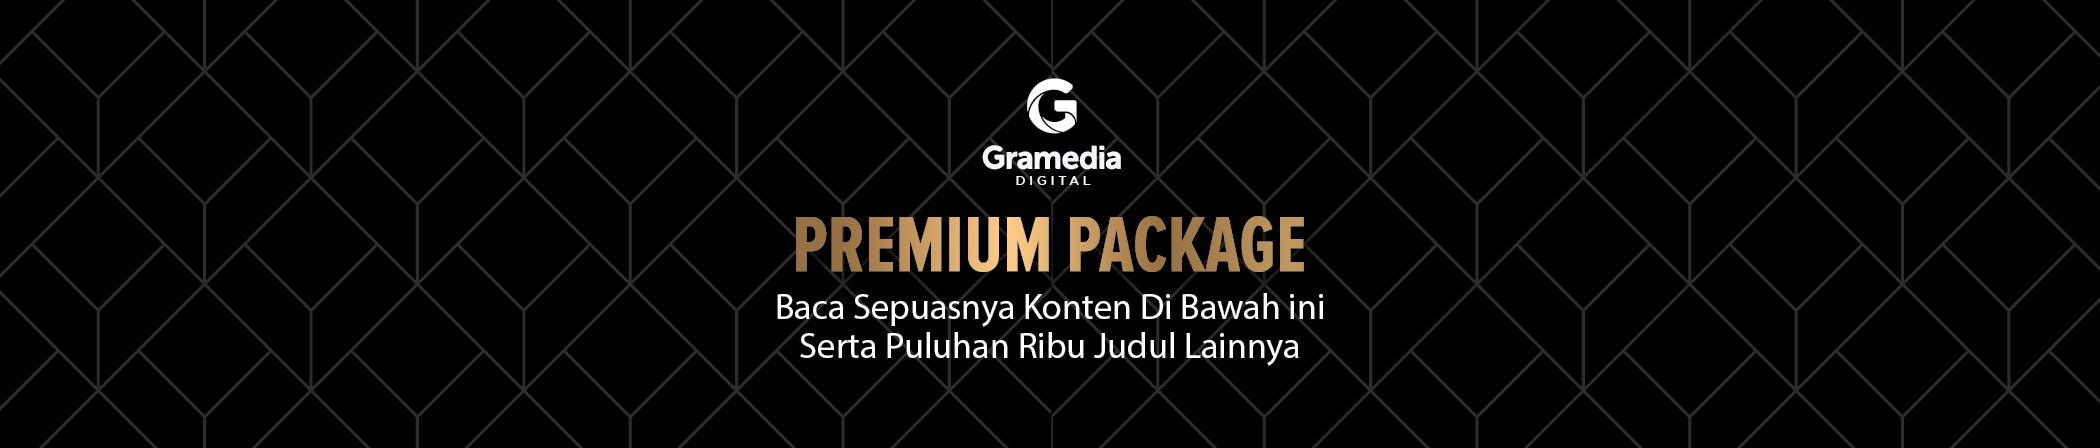 Full Premium Package Gramedia Digital